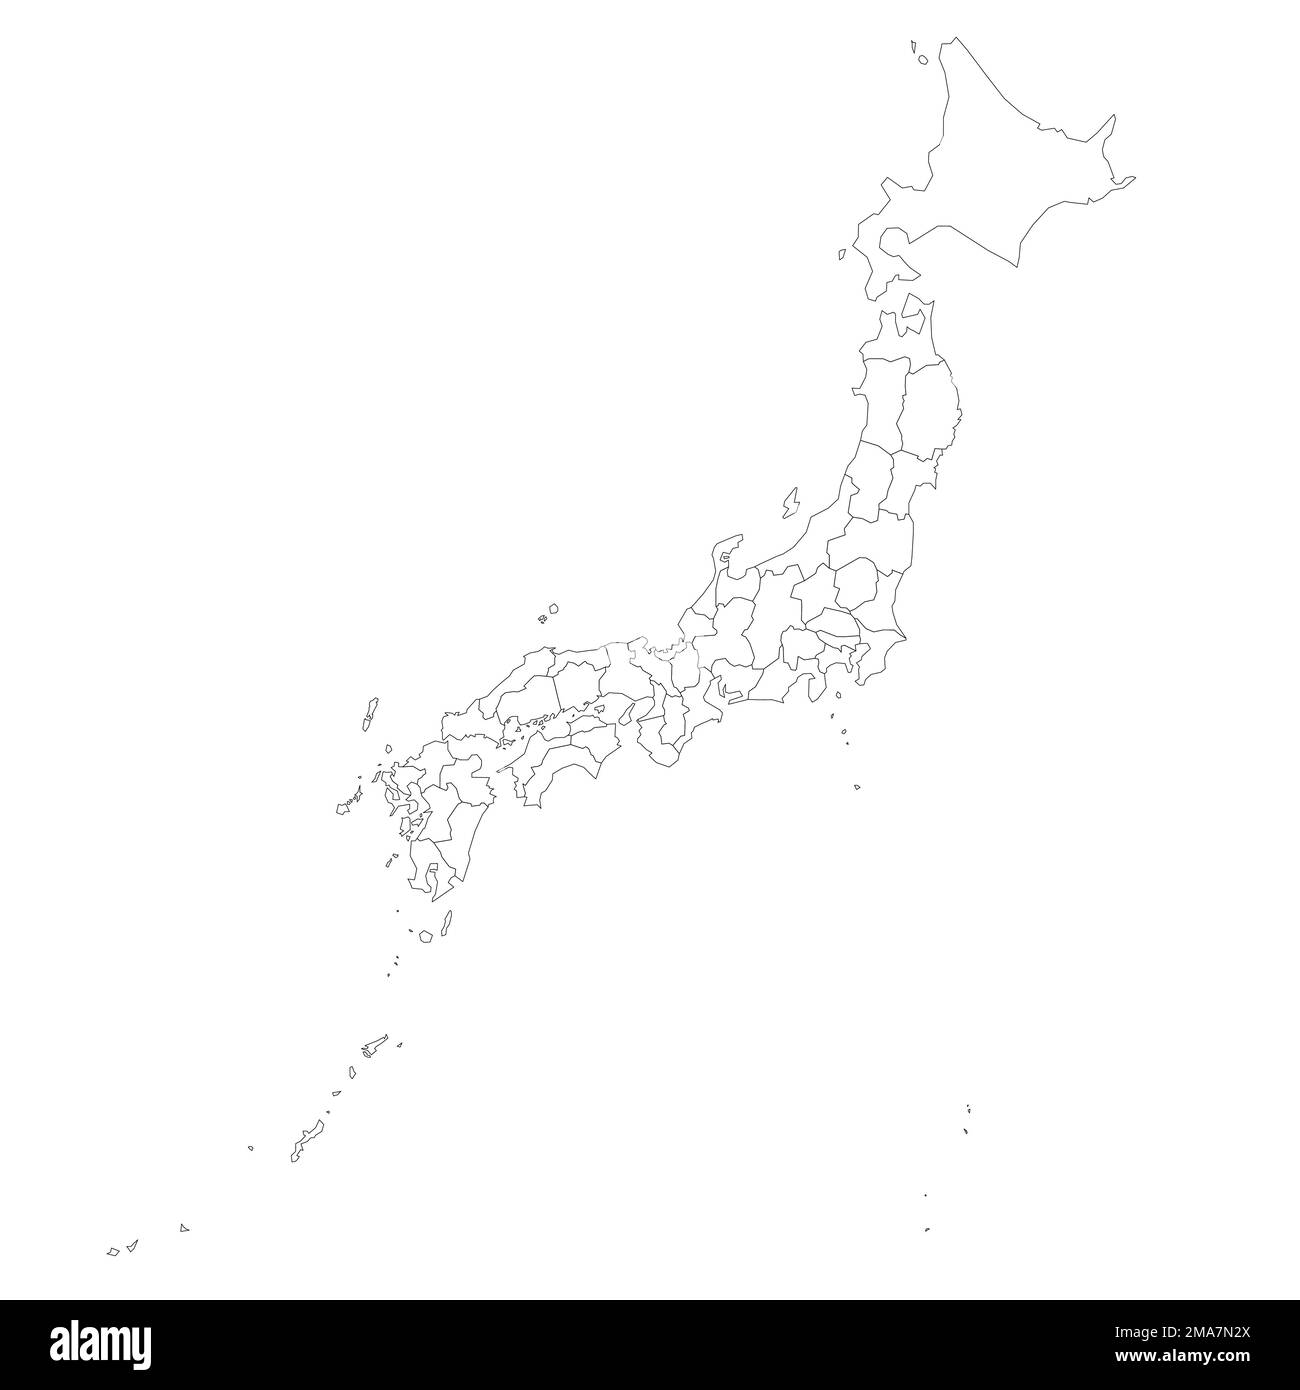 Japon carte politique des divisions administratives Illustration de Vecteur